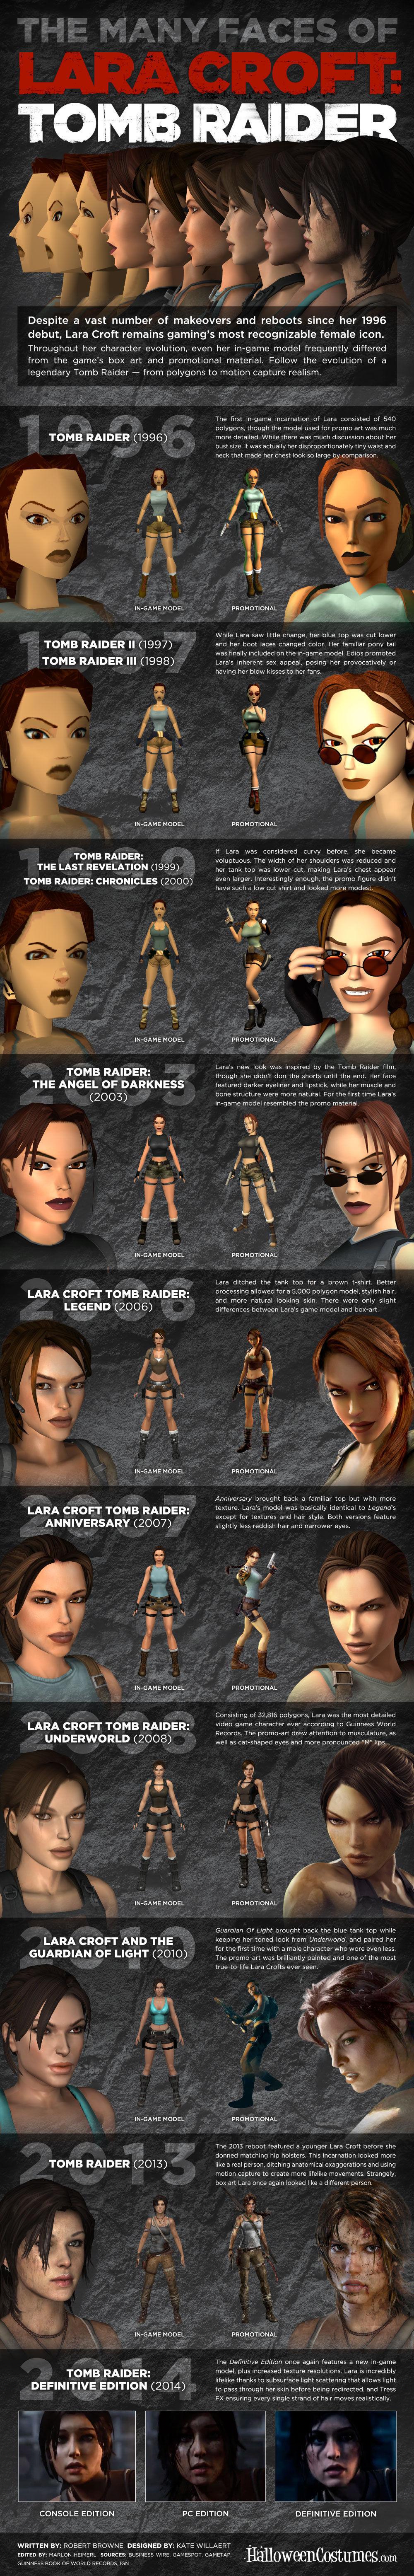 Repasan en una imagen la evolución de Lara Croft